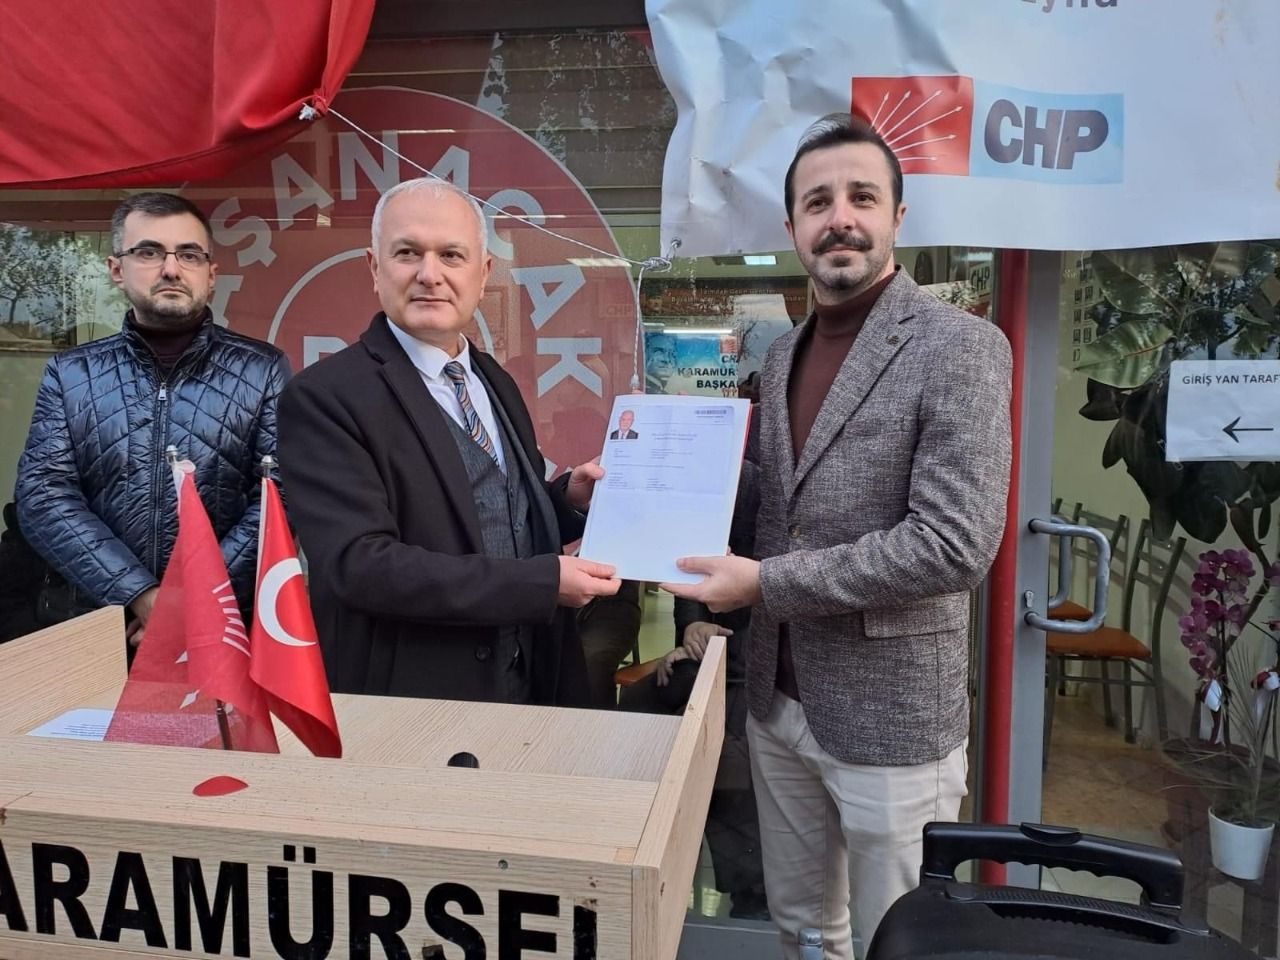 CHP Karamürsel’de güçlü aday: Ahmet Çalık başvurdu